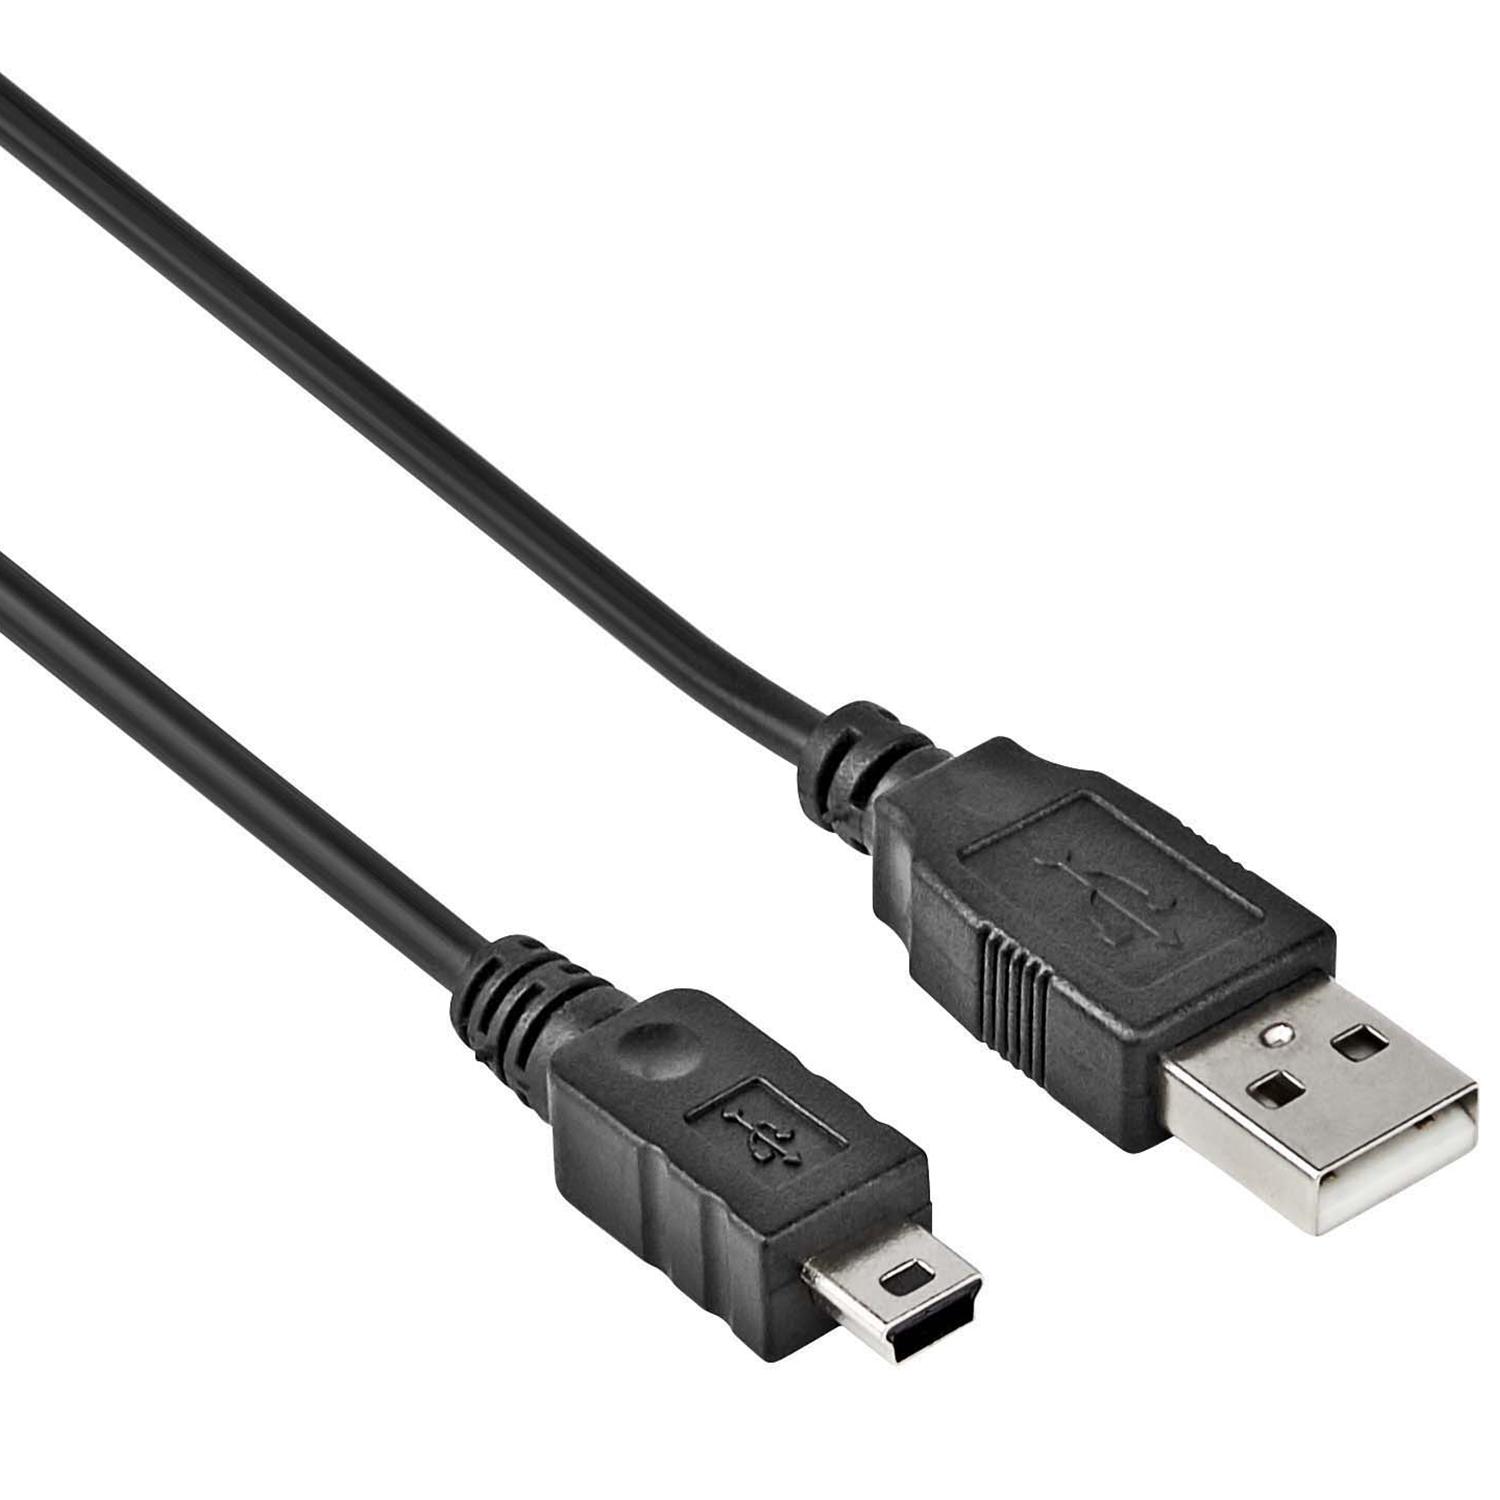 USB Mini datakabel - 0.3 meter - Allteq